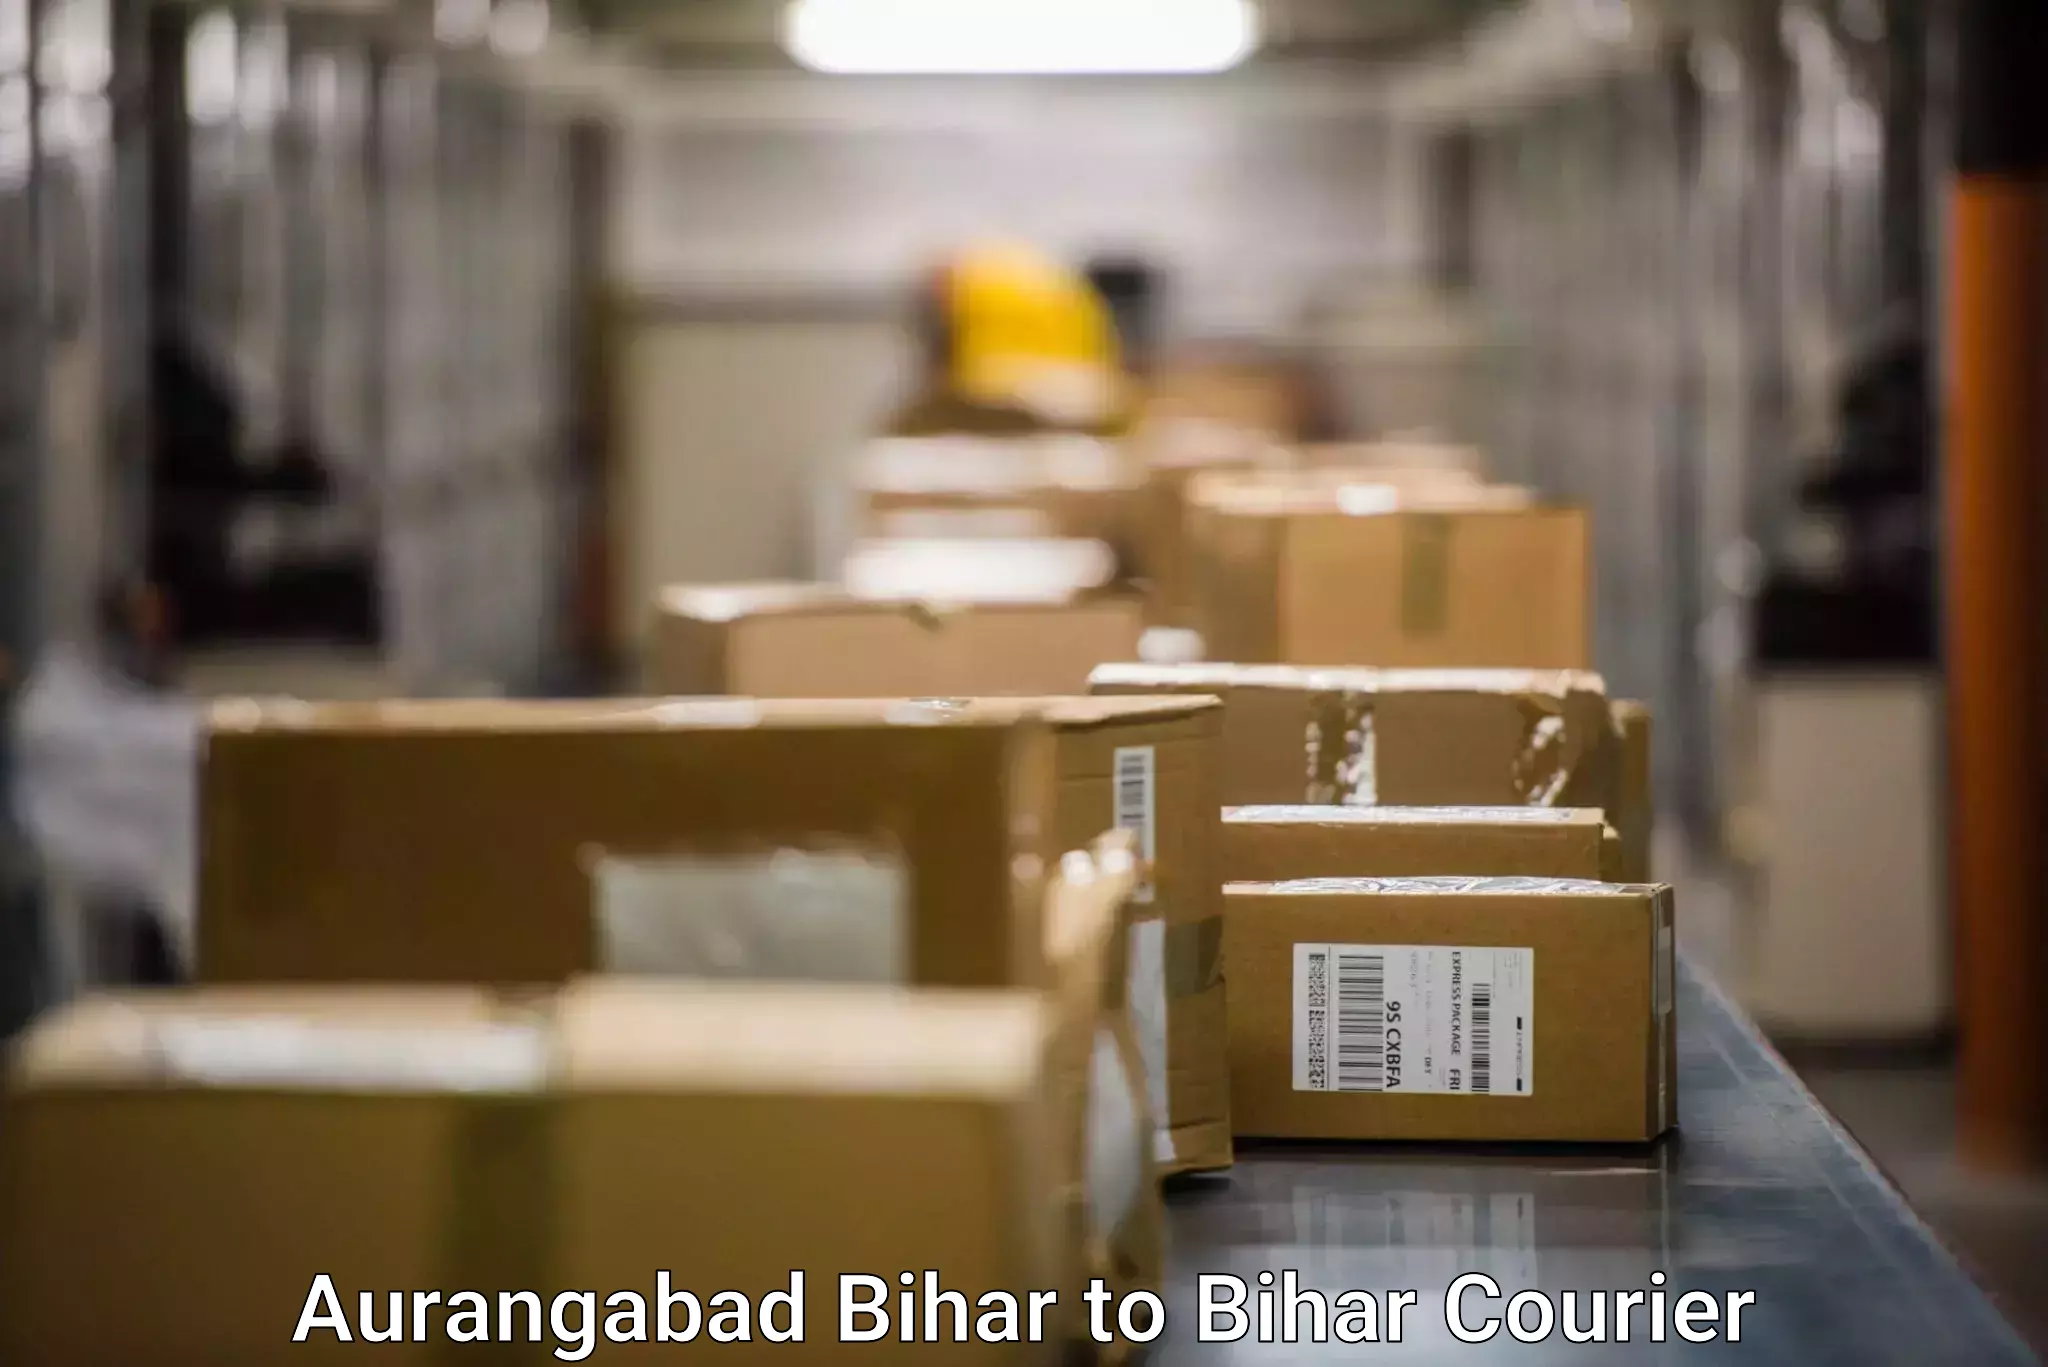 Tracking updates in Aurangabad Bihar to Bihar